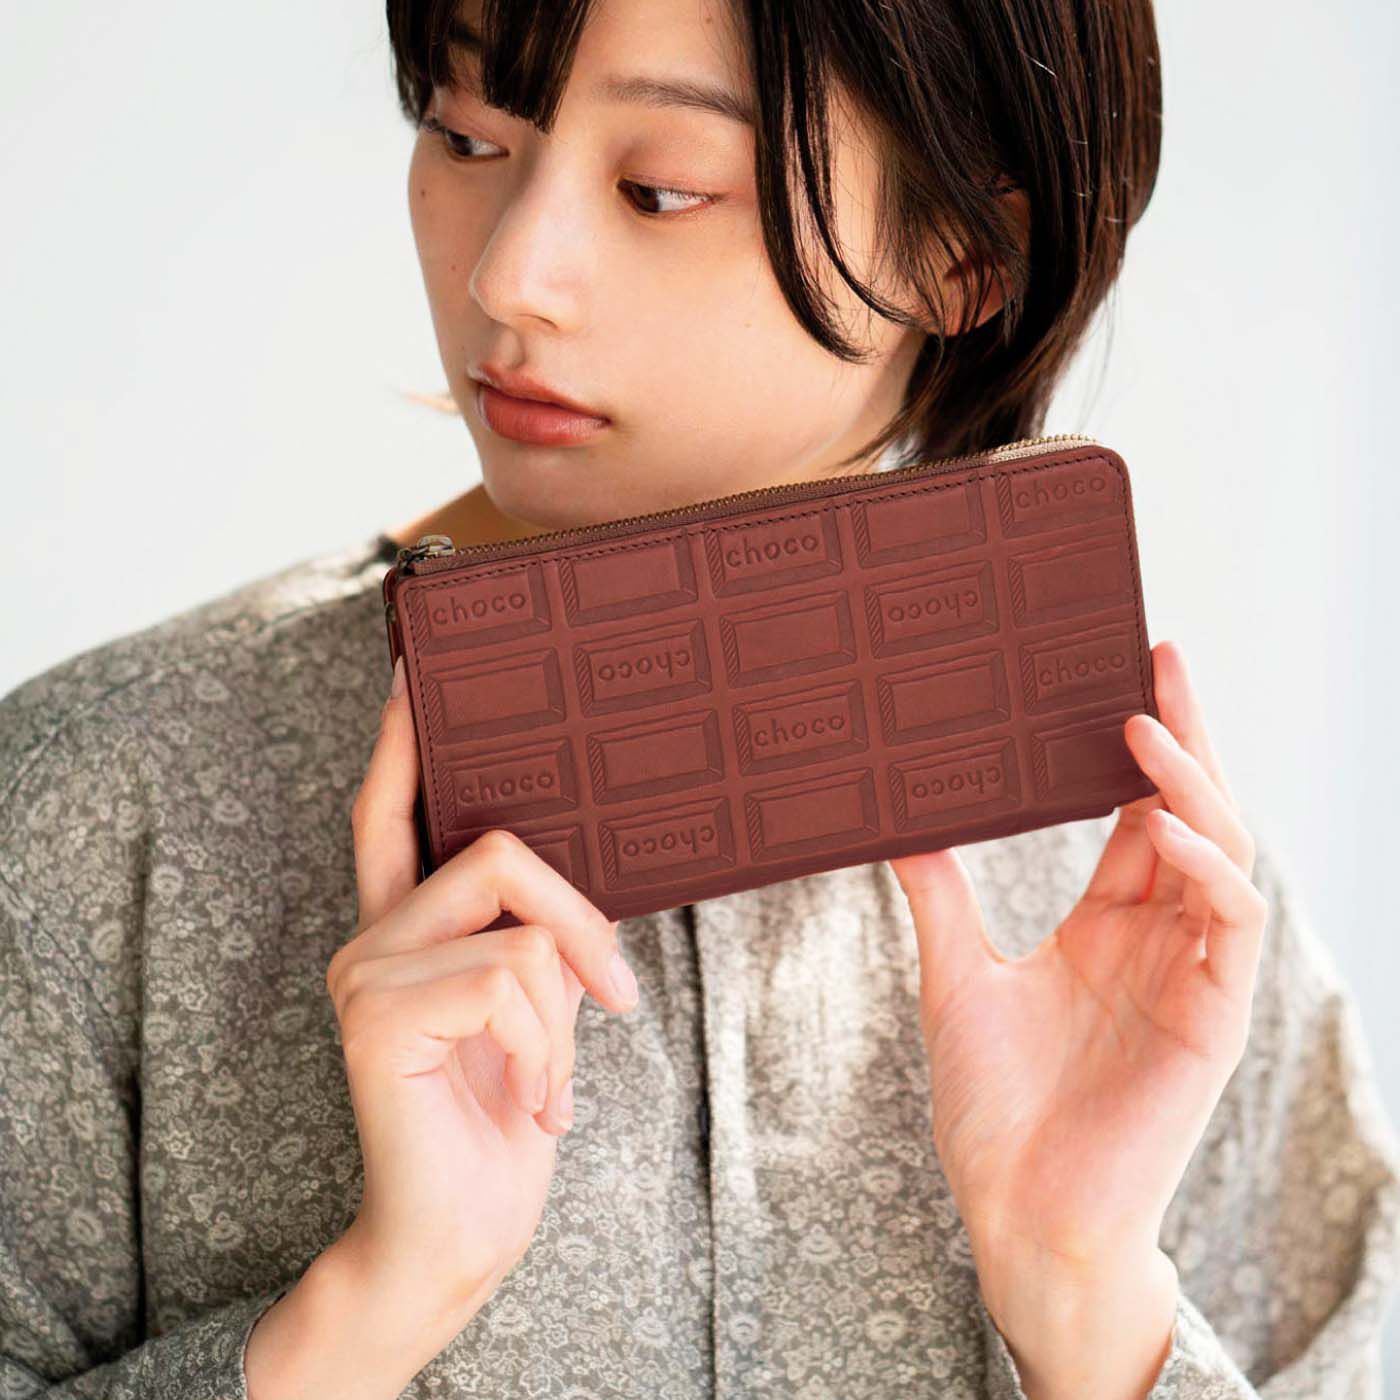 チョコレートバイヤーと作った 職人本革のスリムギャルソン財布 ...